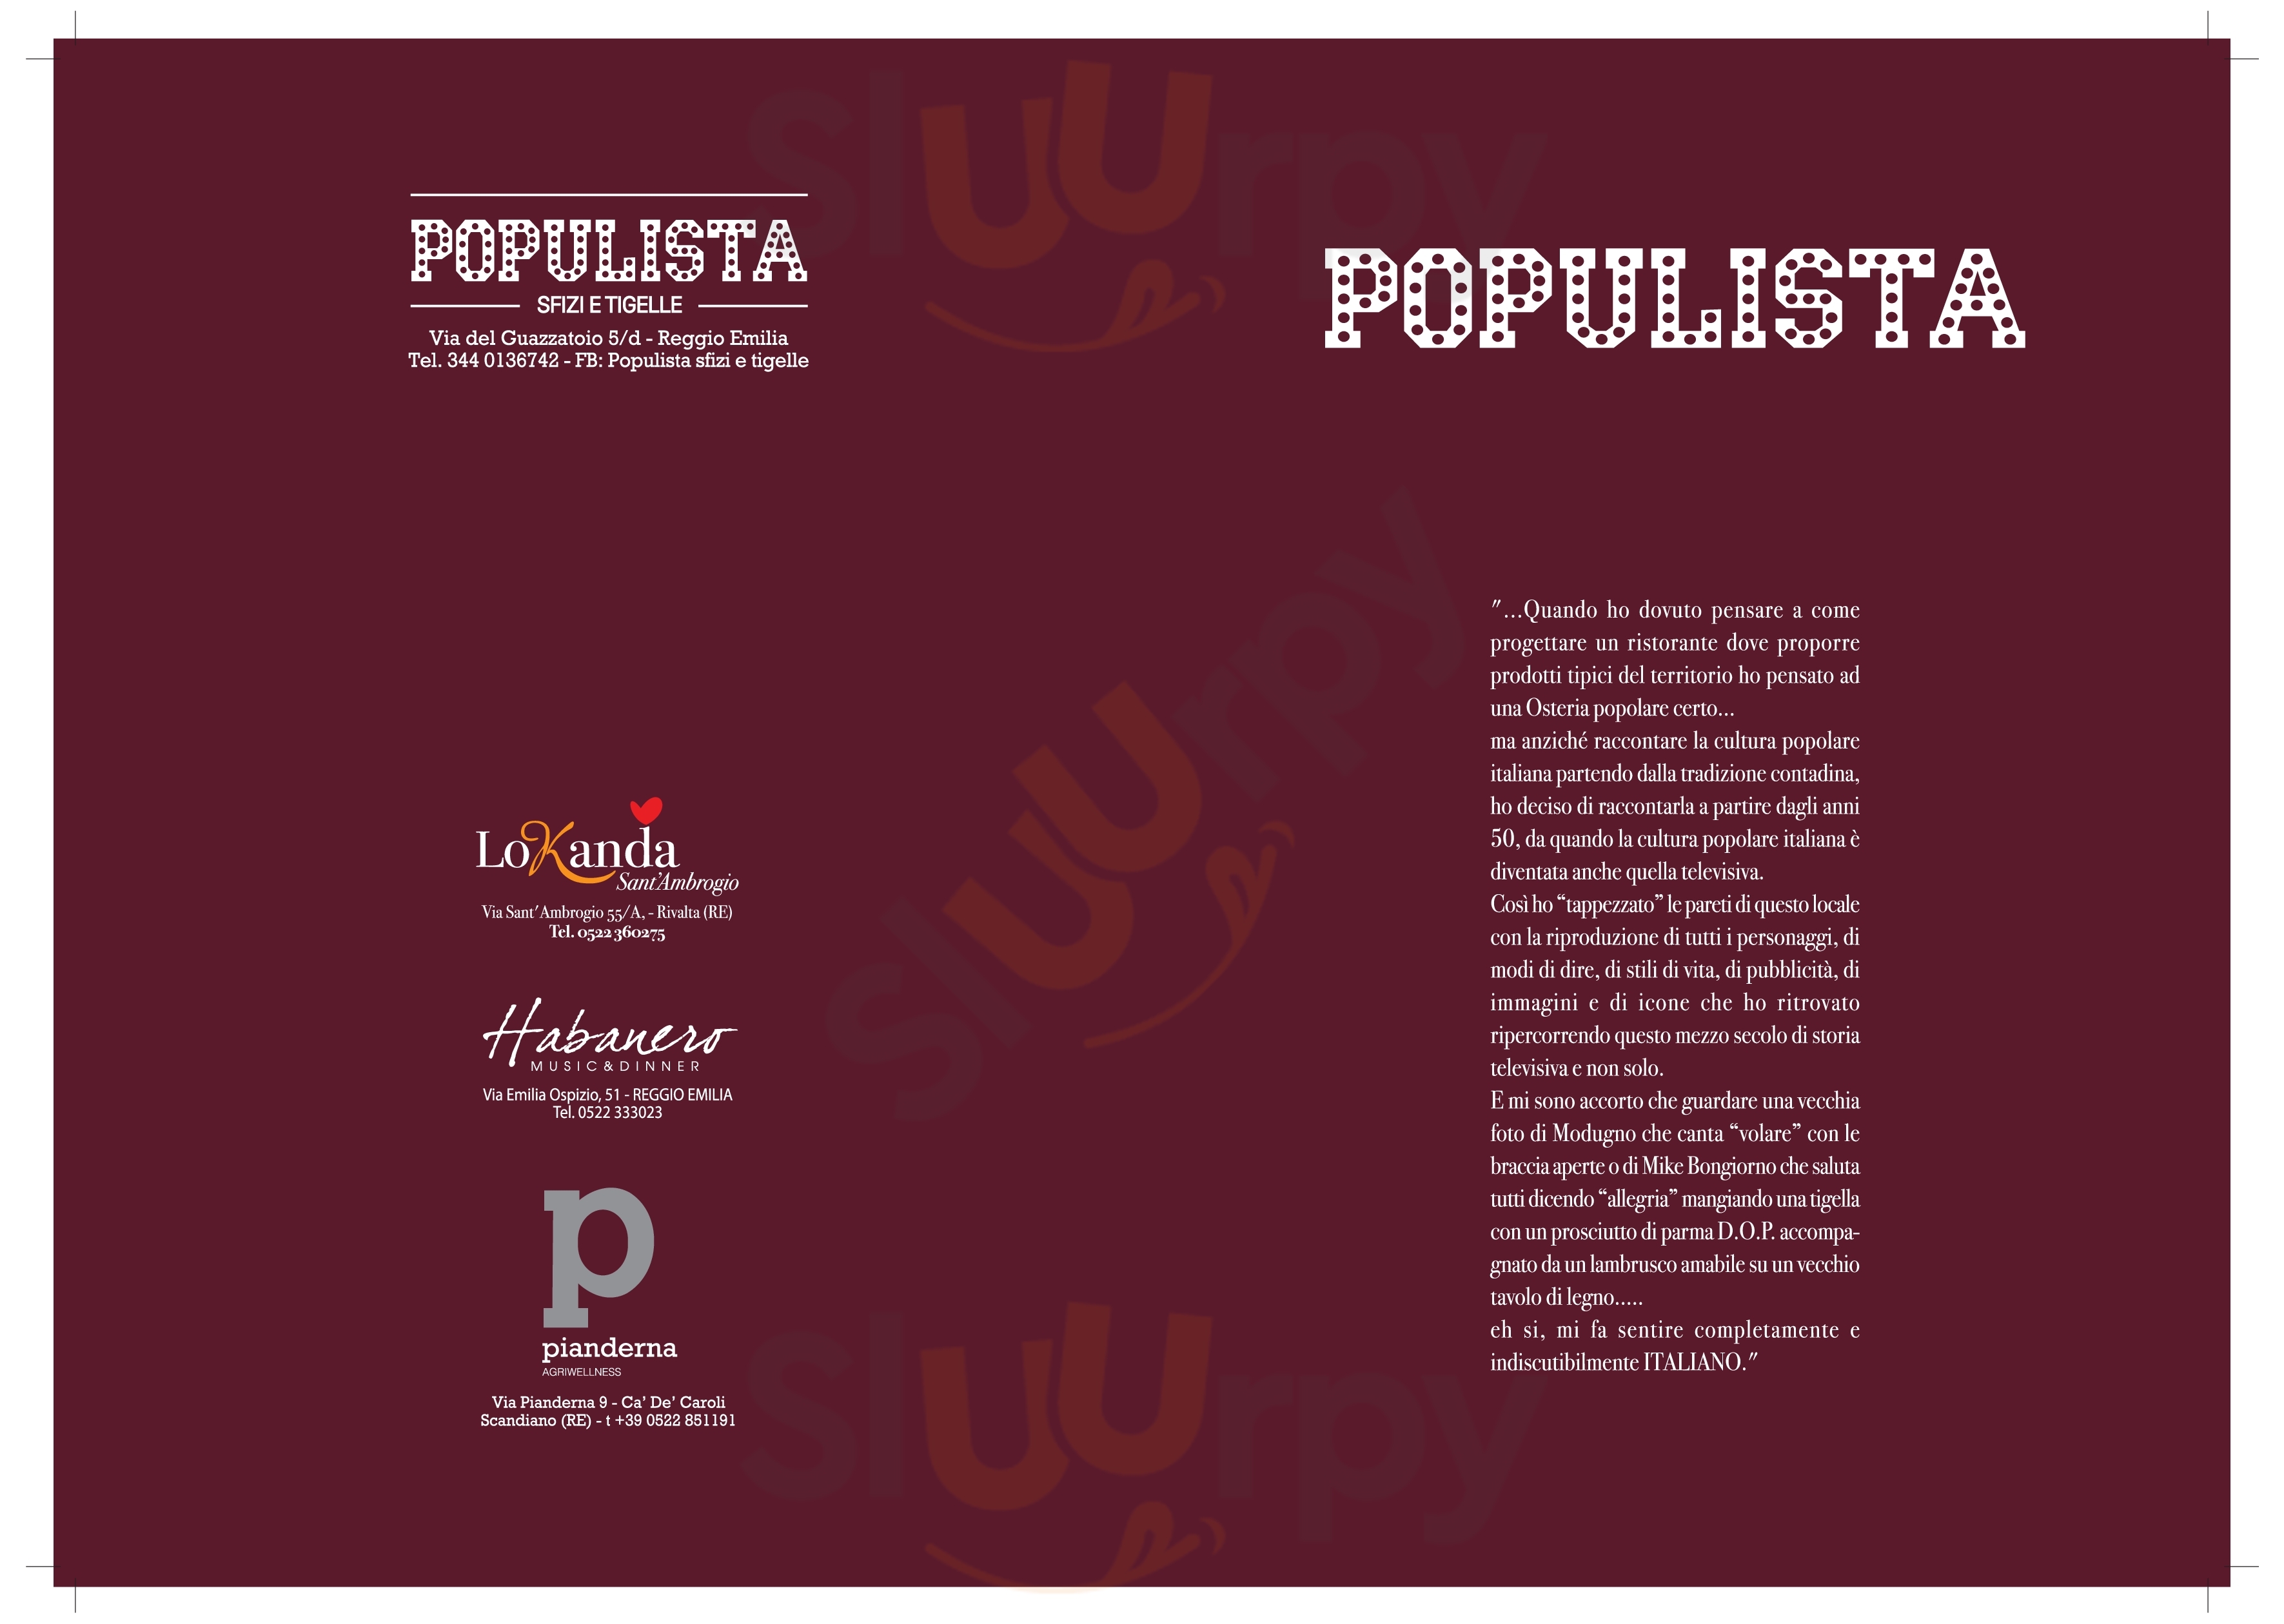 Populista - Sfizi e Tigelle Reggio Emilia menù 1 pagina